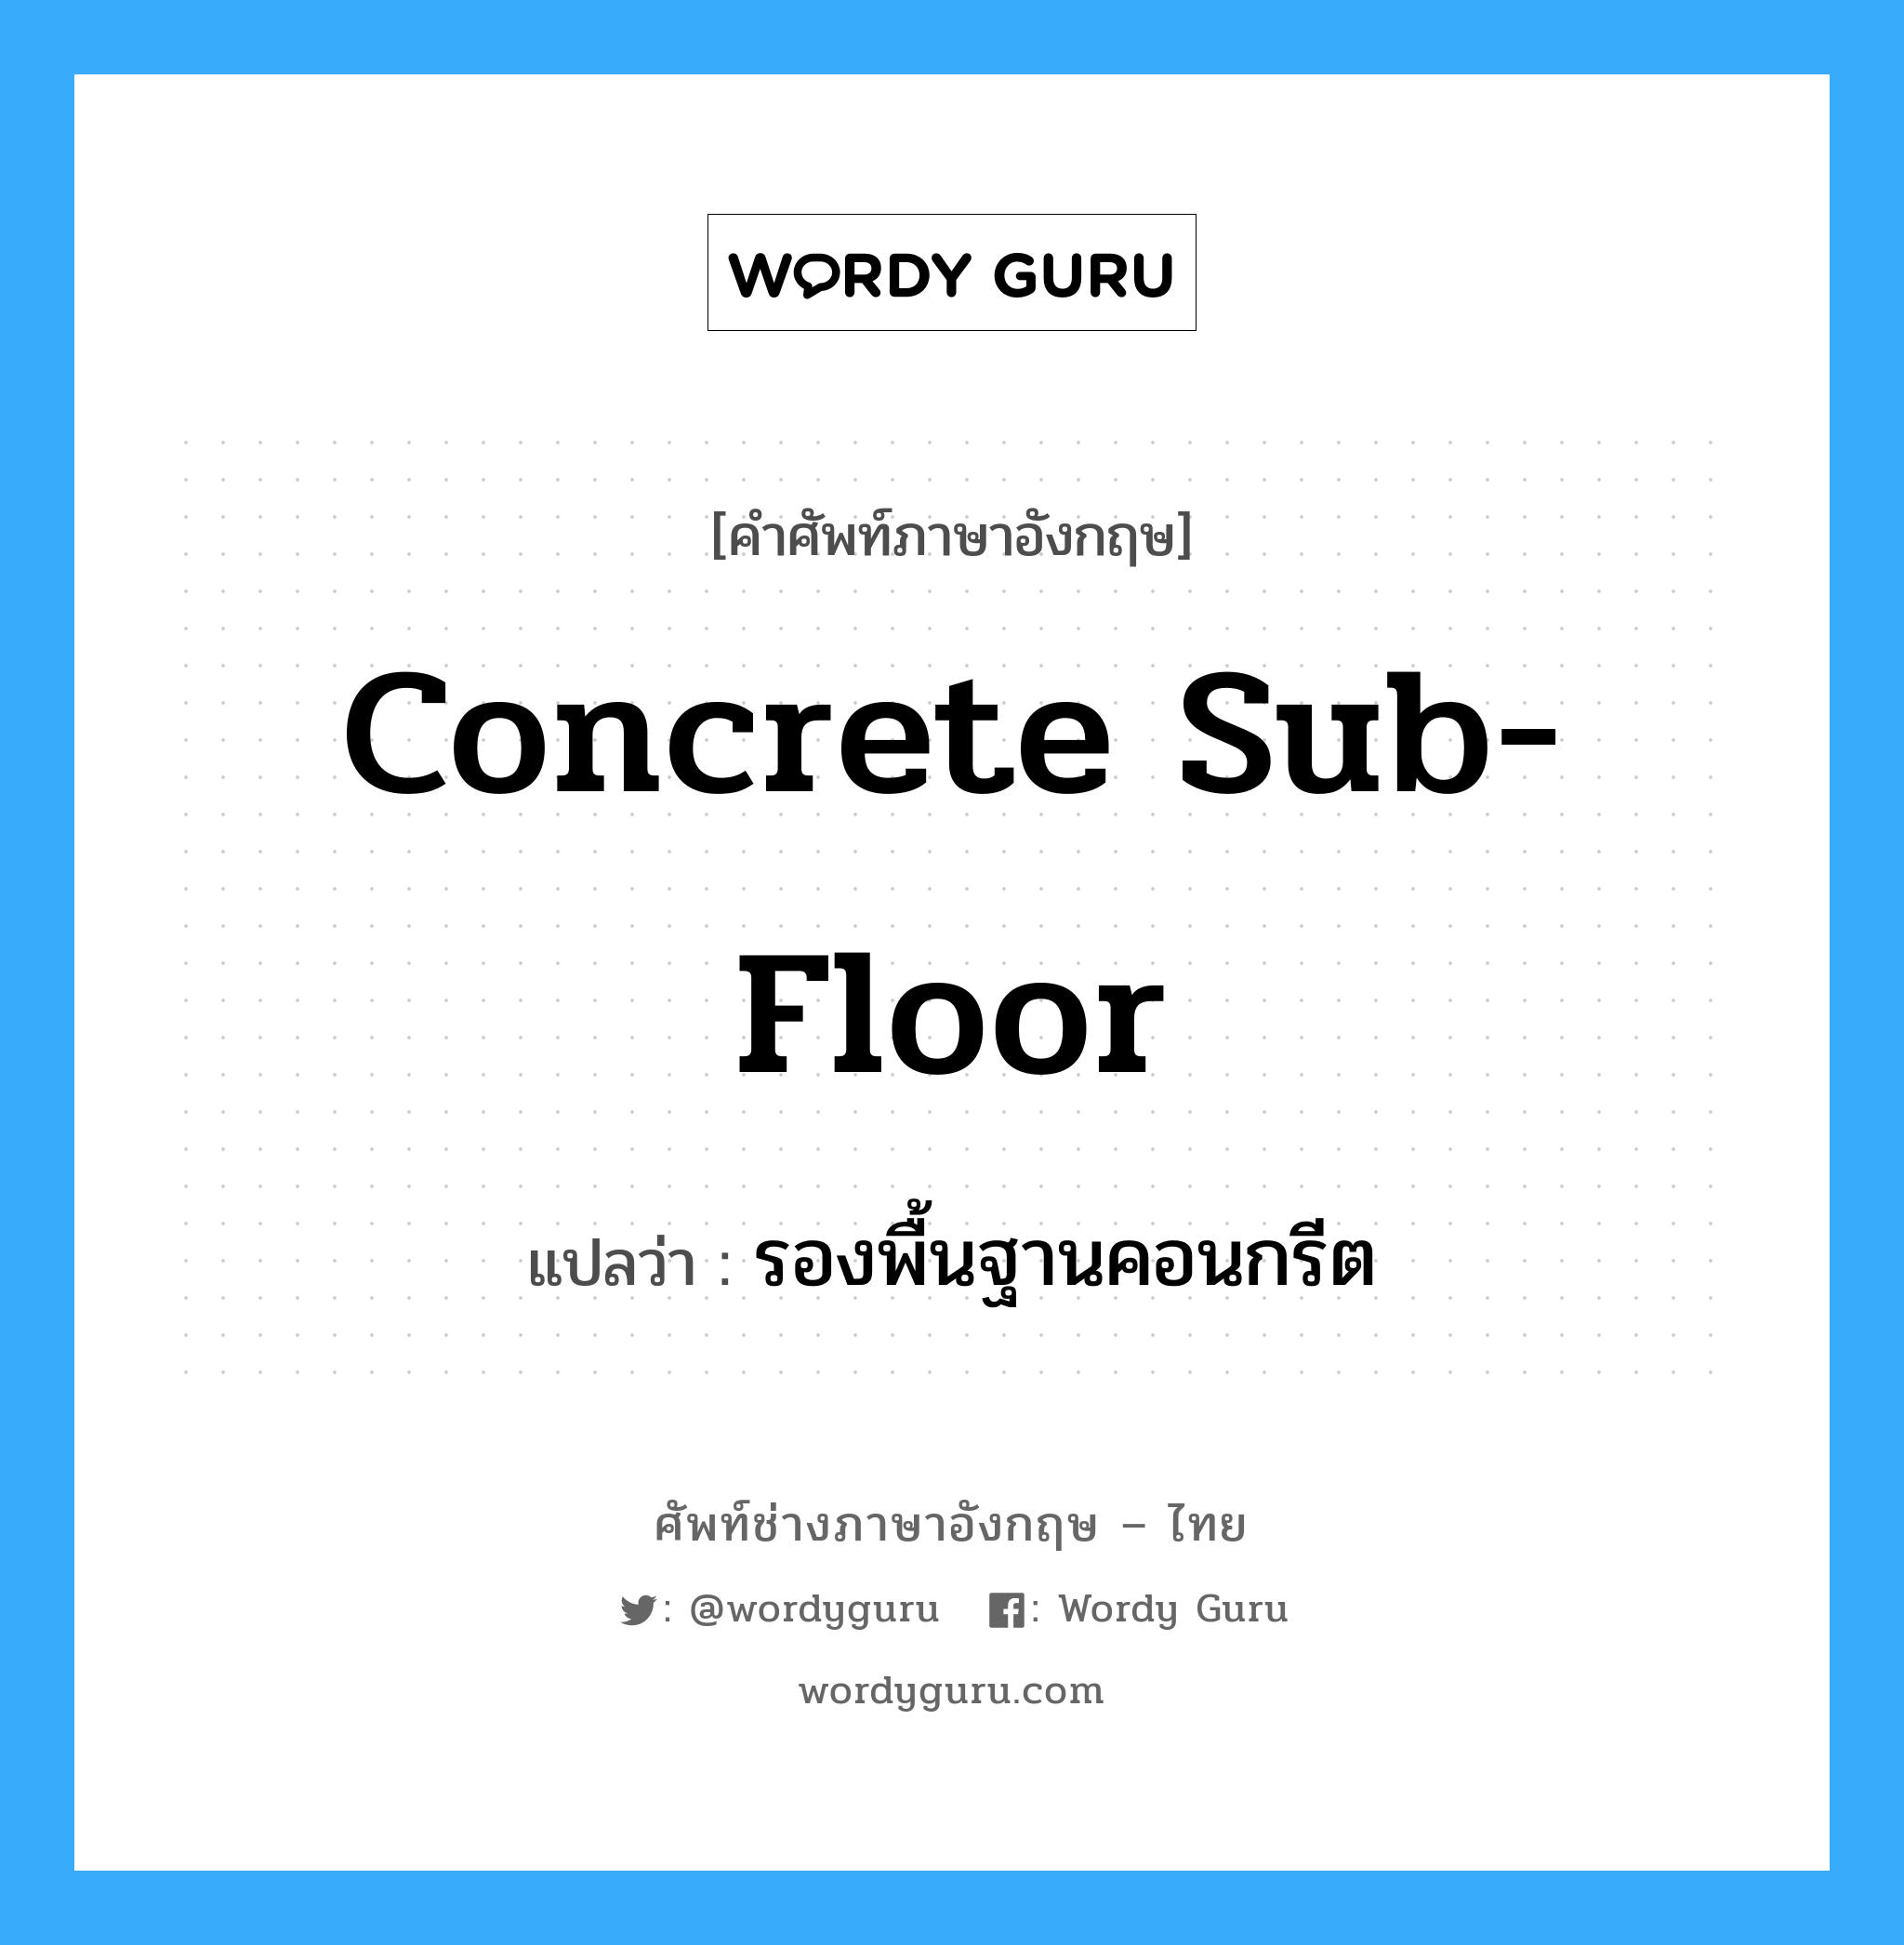 รองพื้นฐานคอนกรีต ภาษาอังกฤษ?, คำศัพท์ช่างภาษาอังกฤษ - ไทย รองพื้นฐานคอนกรีต คำศัพท์ภาษาอังกฤษ รองพื้นฐานคอนกรีต แปลว่า concrete sub-floor